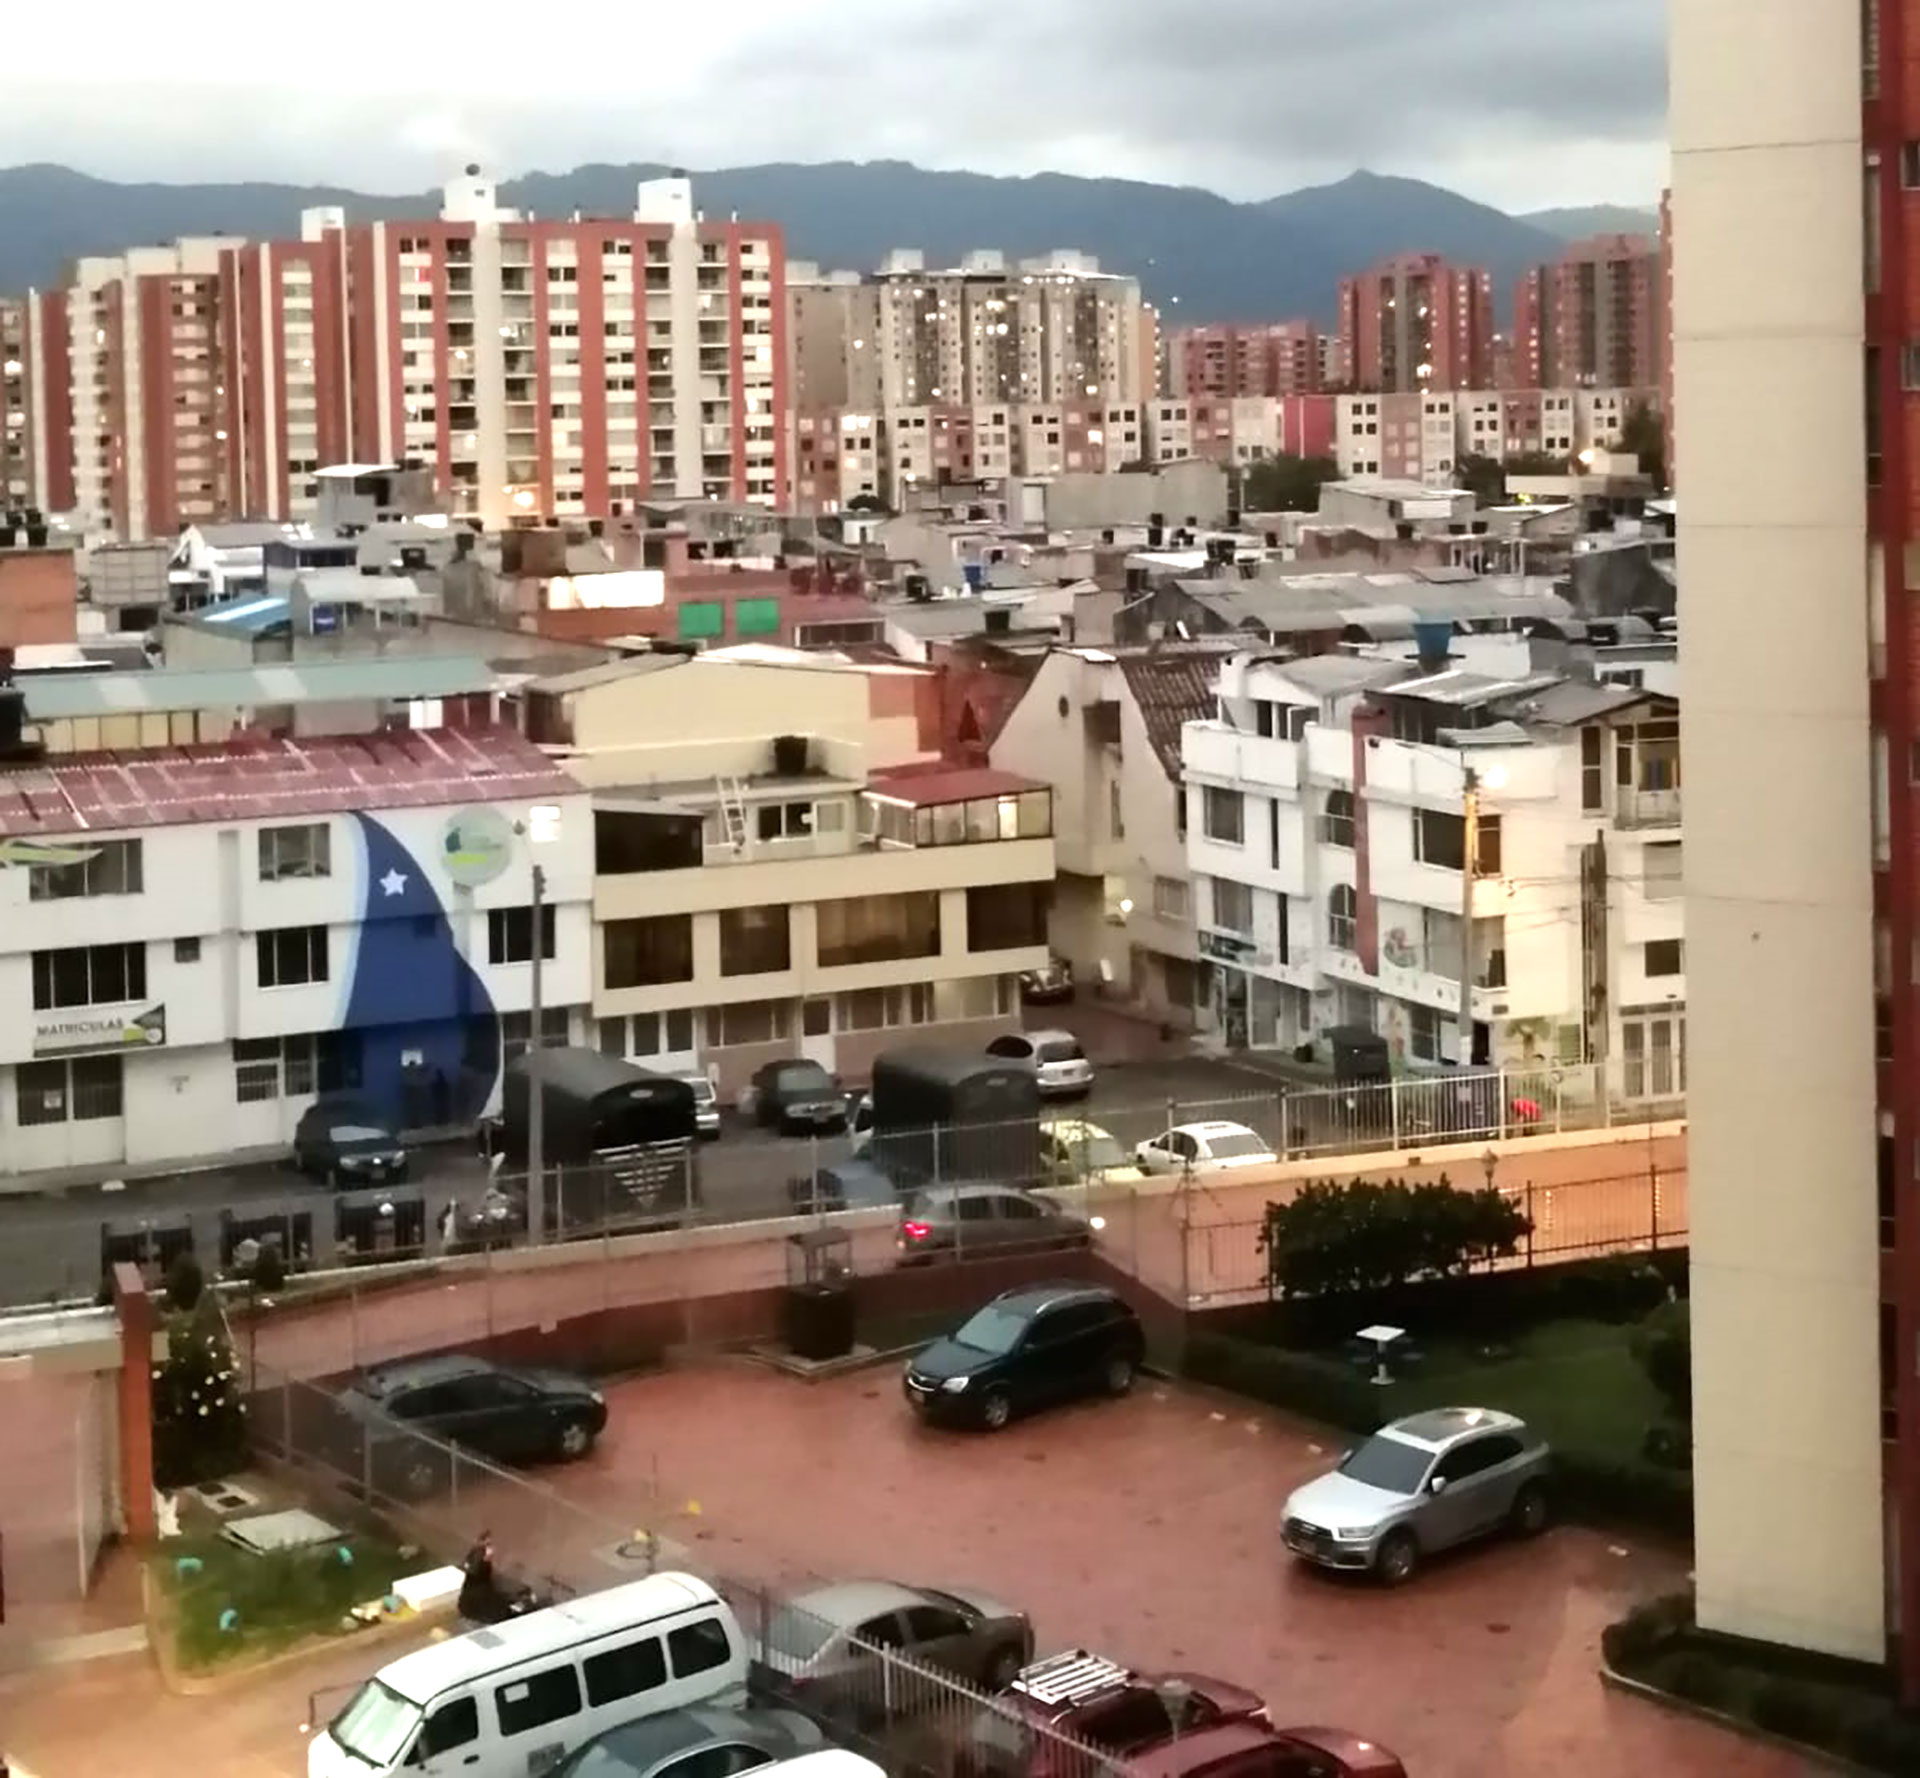 Los edificios en Bogotá disponen de cocheras propias donde los inquilinos estacionan sus vehículos. Es usual que nadie deje su auto en la calle por cuestiones de seguridad